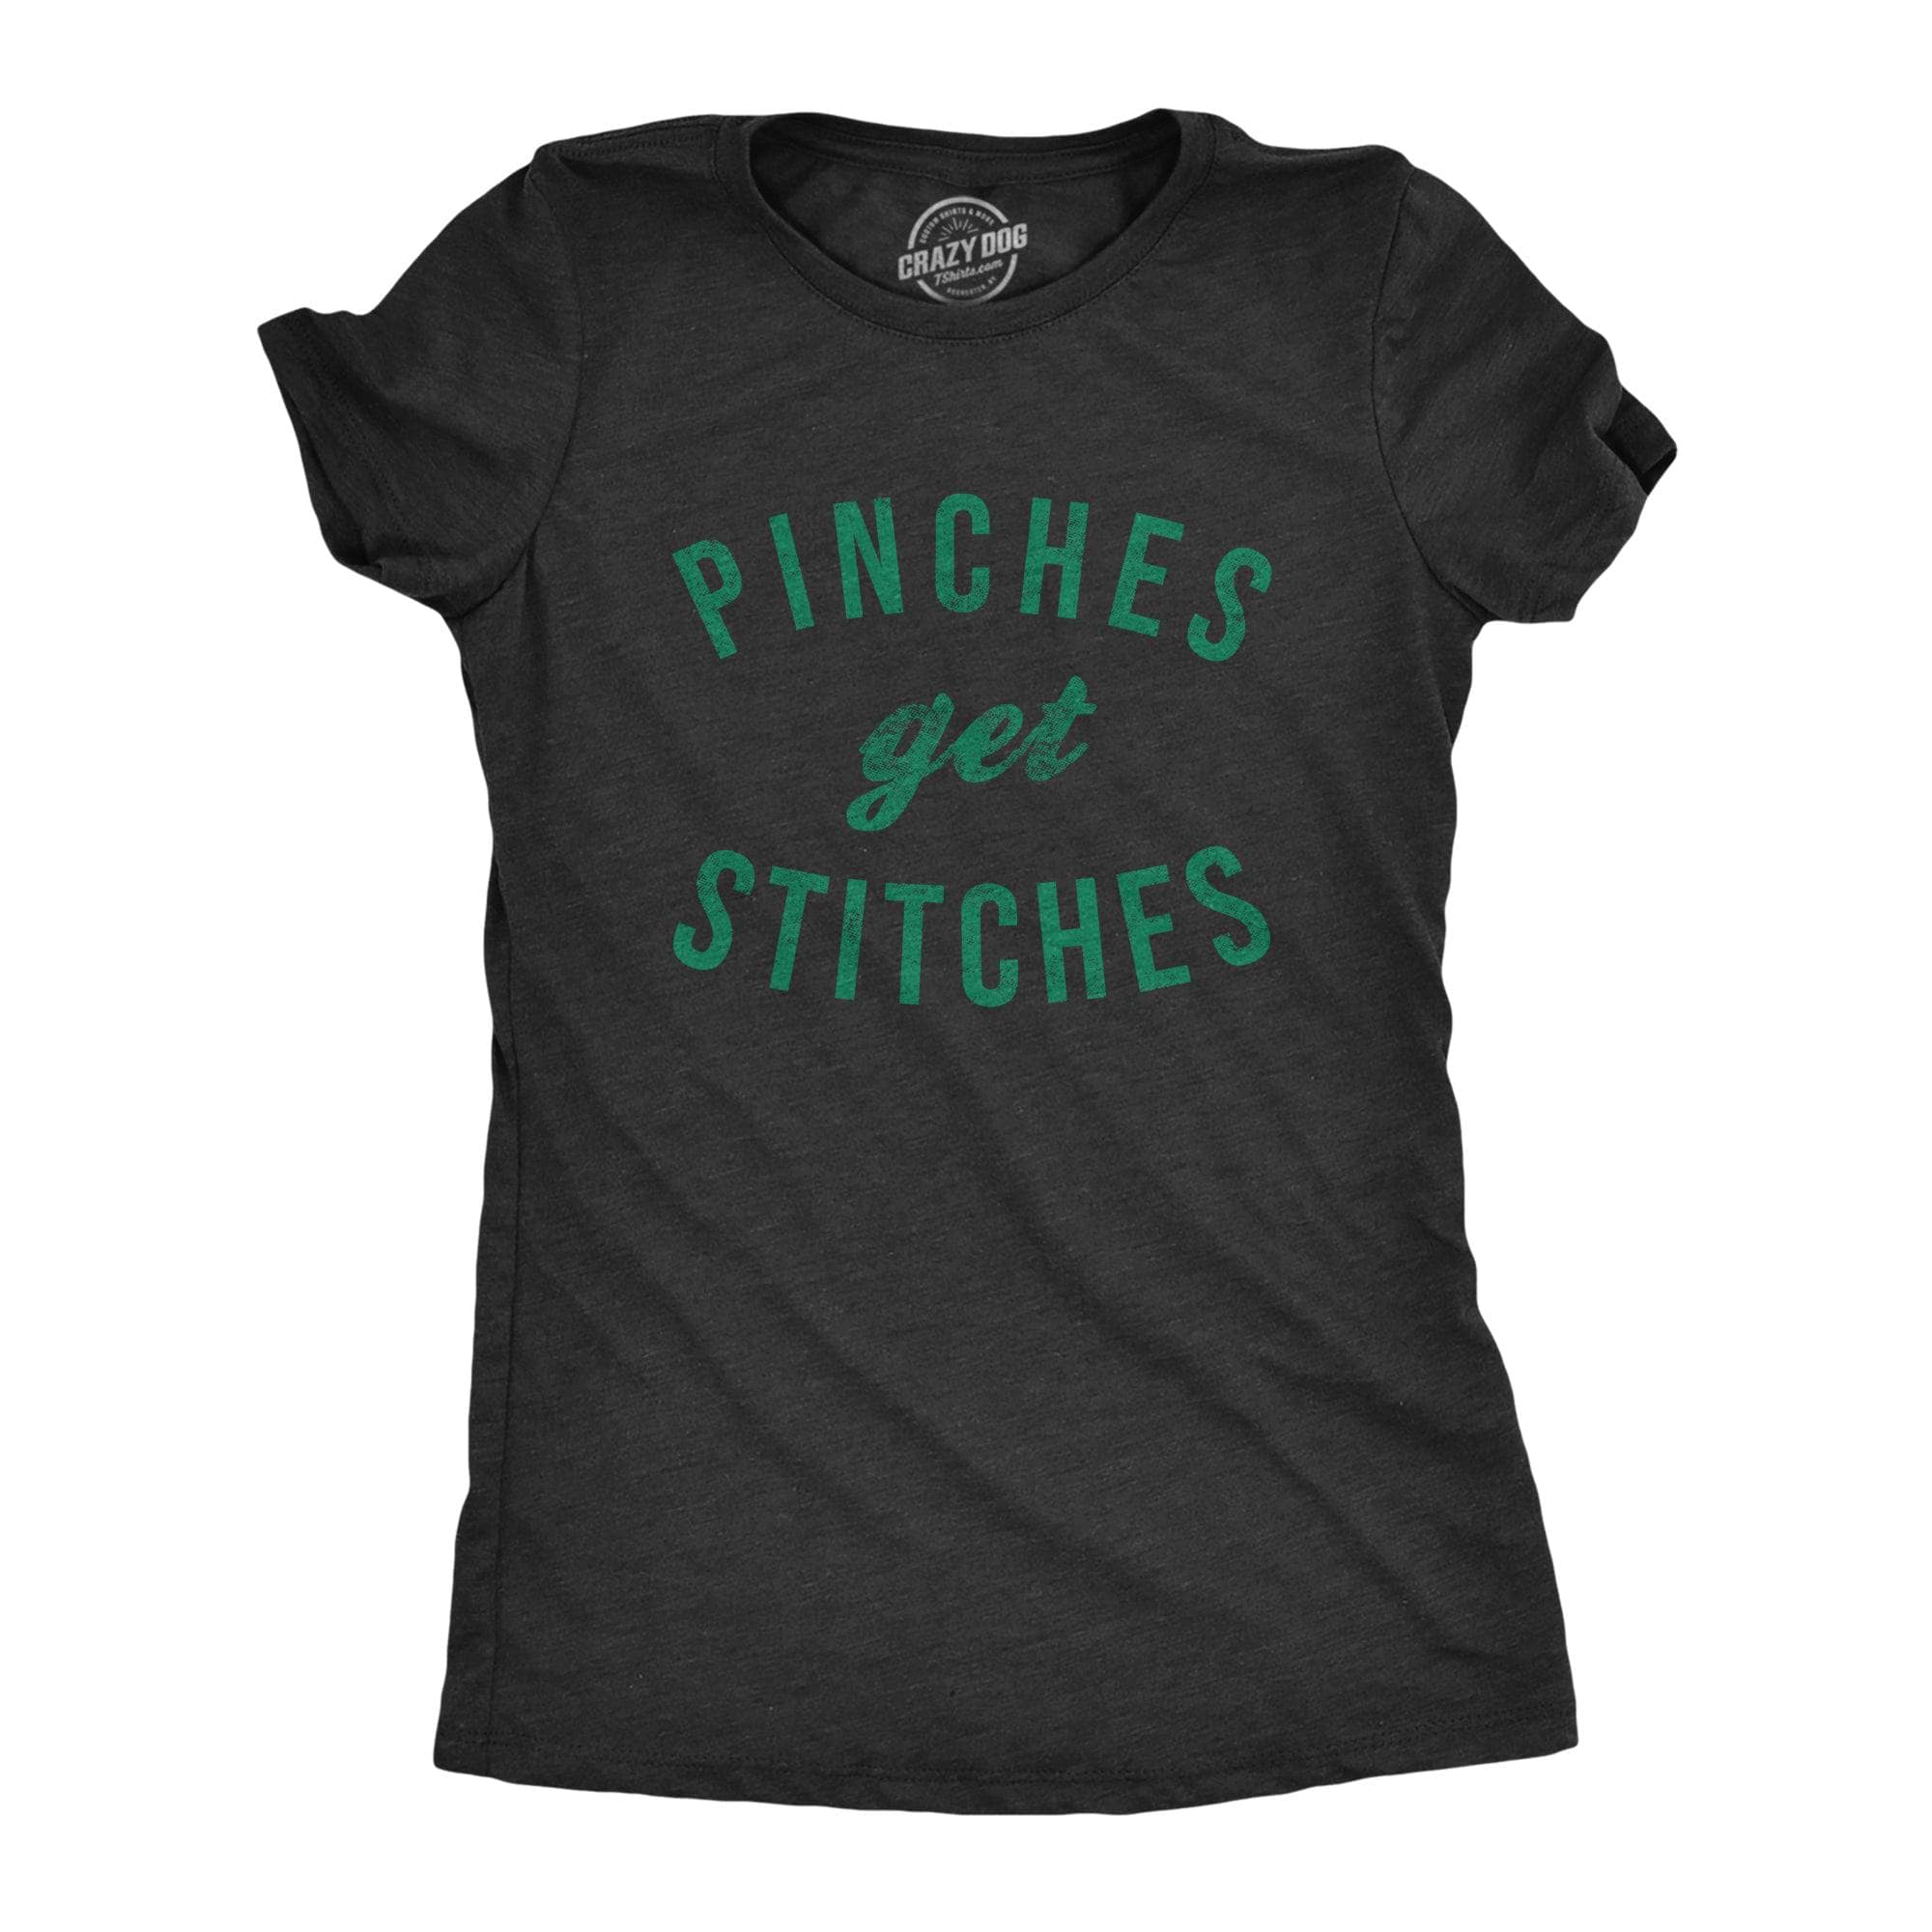 Pinches Get Stitches Women's Tshirt  -  Crazy Dog T-Shirts